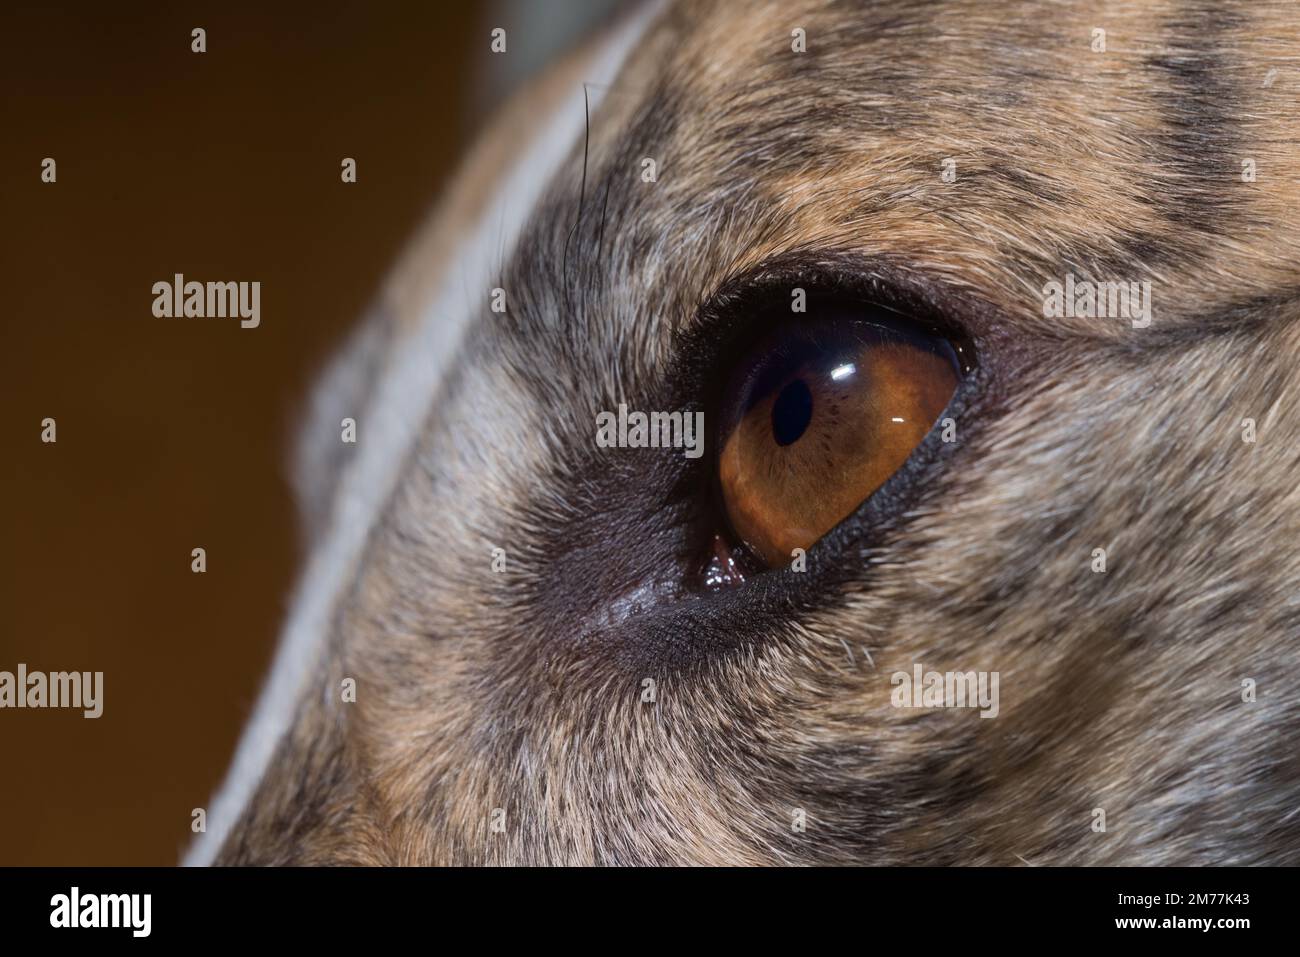 Détail de l'iris brun riche de l'œil gris illustré. L'anatomie, y compris les cryptes, les sillons radiaux, les fielles pigmentaires, la zone pupillaire et la zone ciliaire sont visibles Banque D'Images